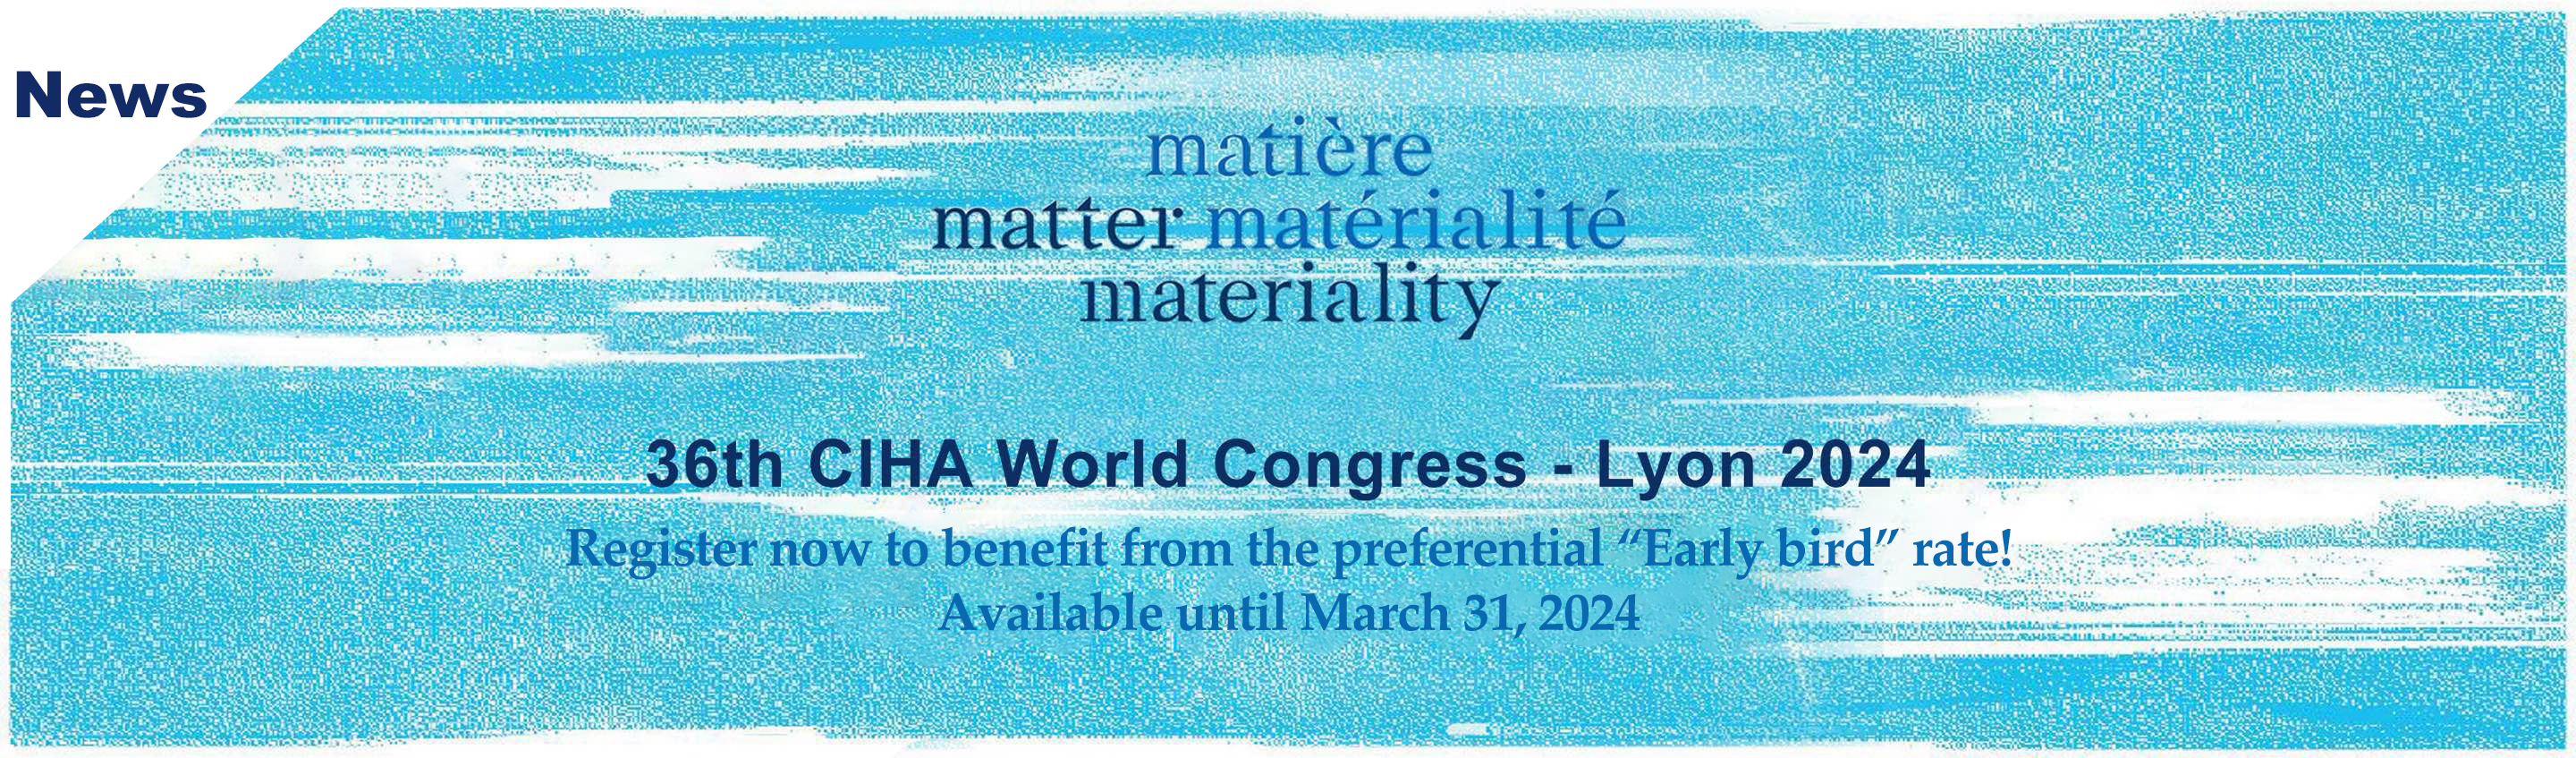 36th CIHA World Congress  Lyon 2024